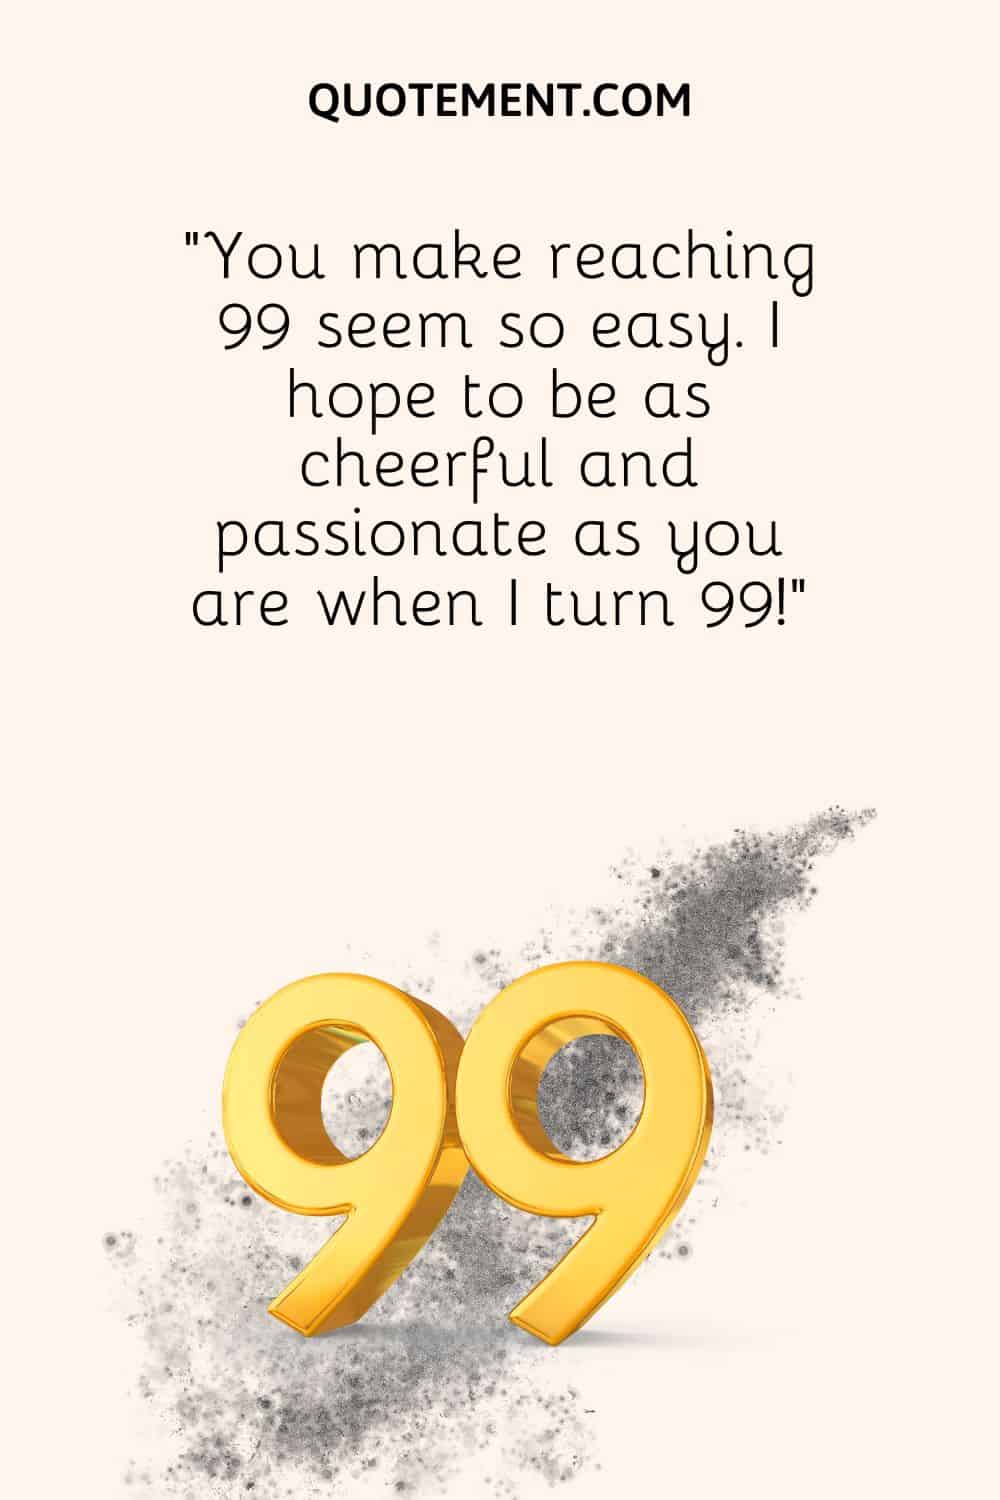 You make reaching 99 seem so easy.